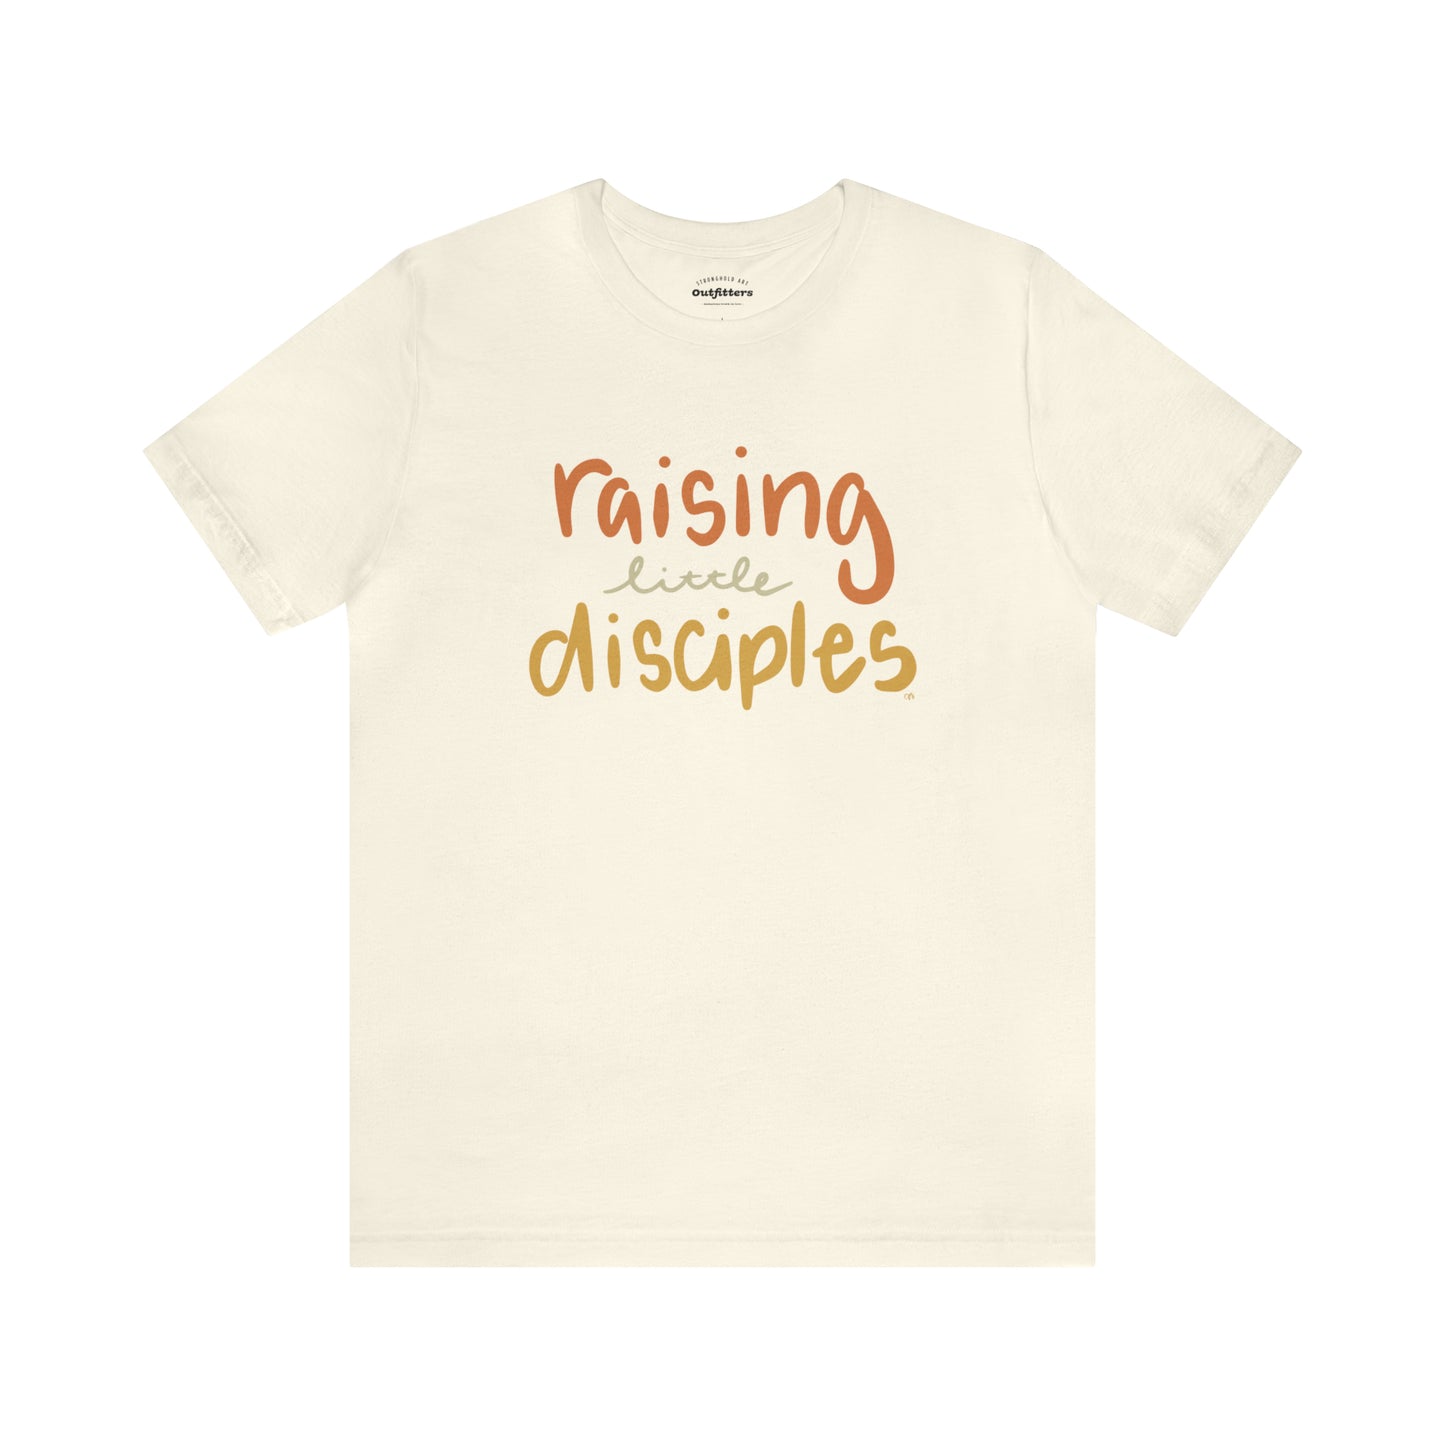 Raising little disciples T-shirt